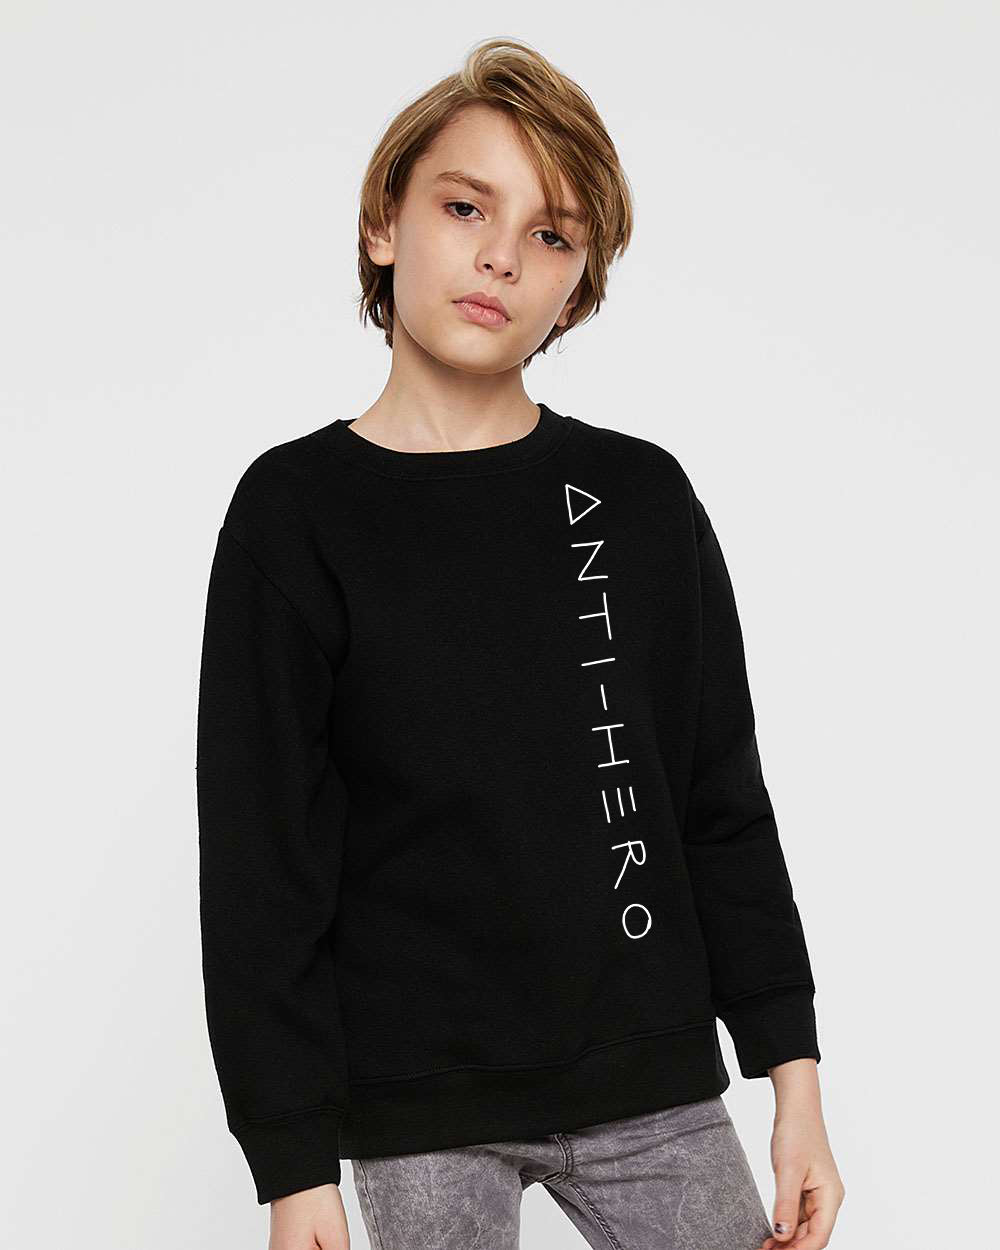 Anti-hero Youth Sweatshirt